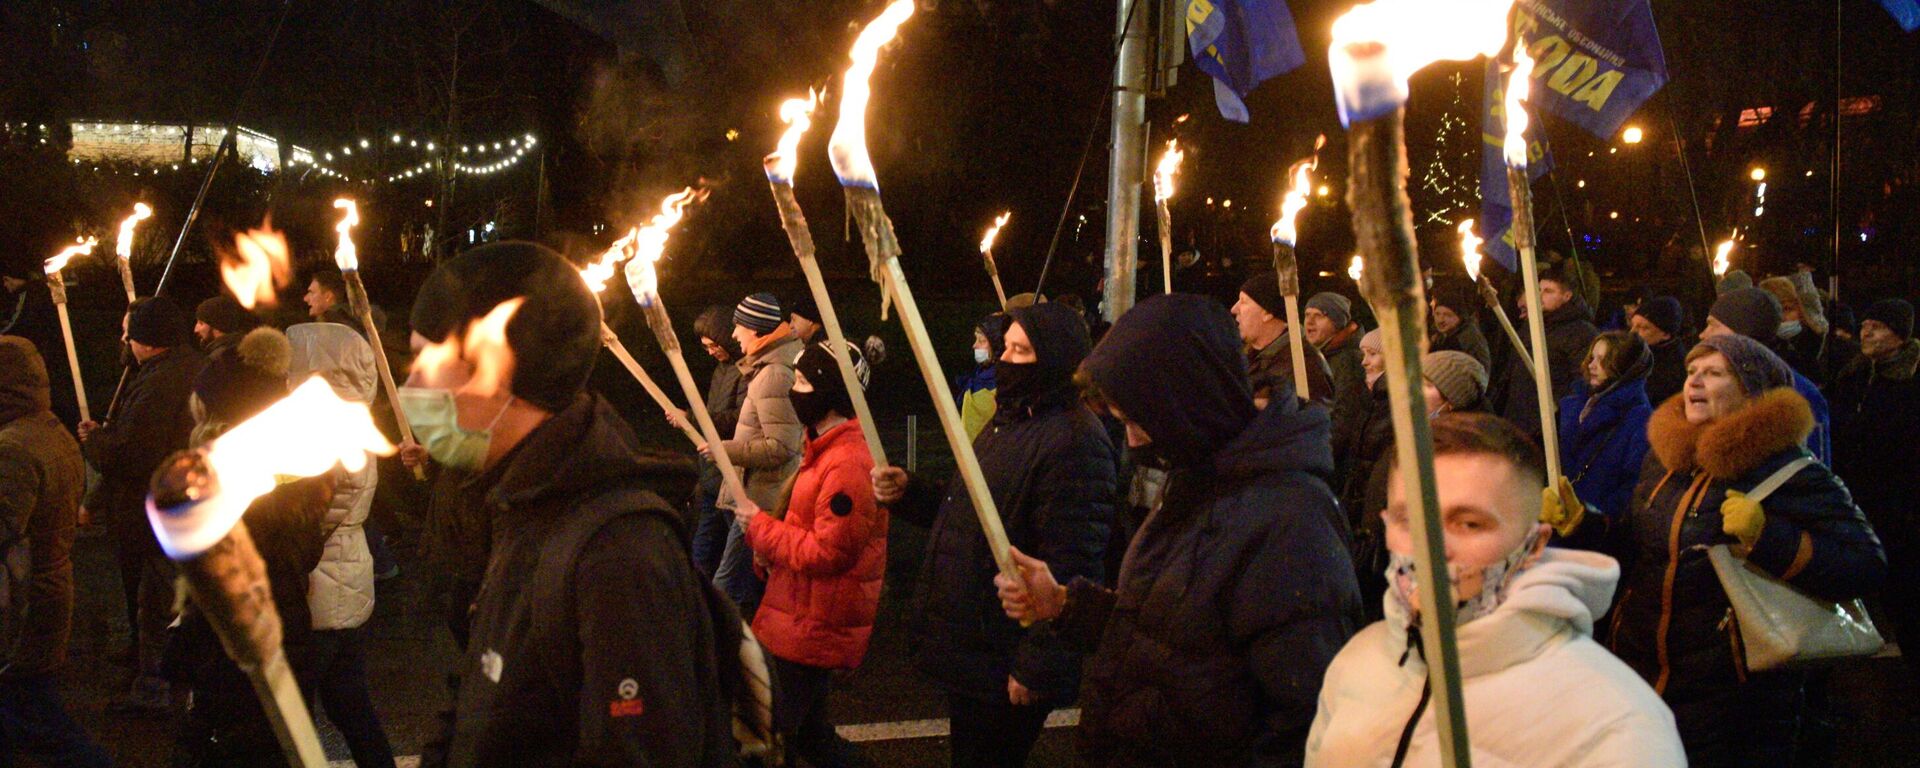 Una marcha de nacionalistas ucranianos en Kiev - Sputnik Mundo, 1920, 27.02.2022